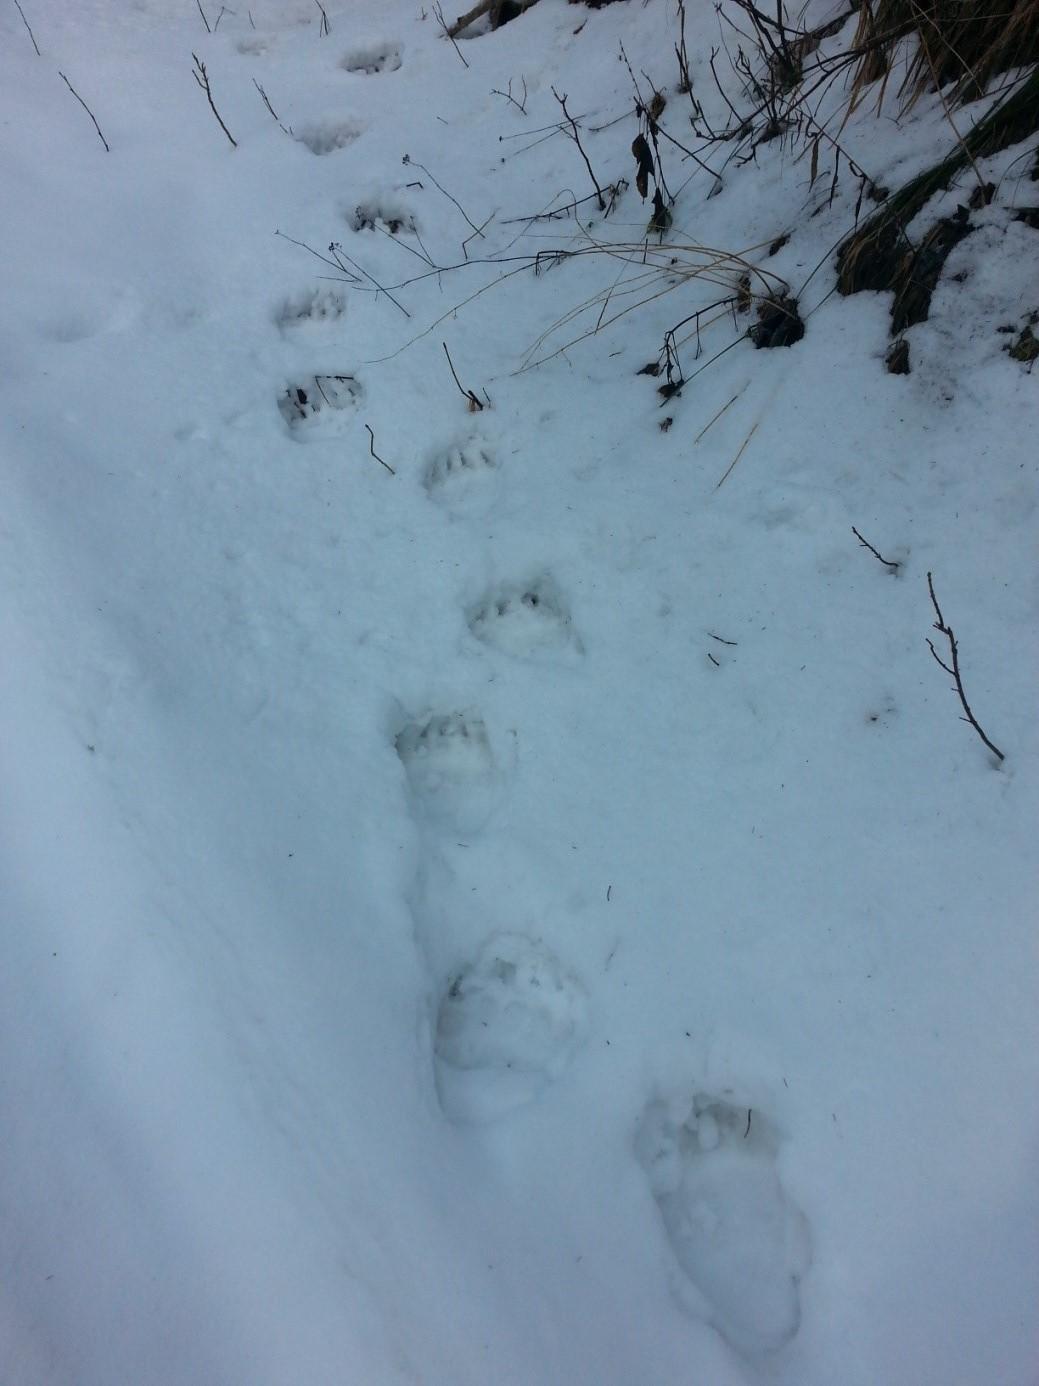  Bestätigter Hinweis auf einen Braunbären durch Trittsiegel im Schnee